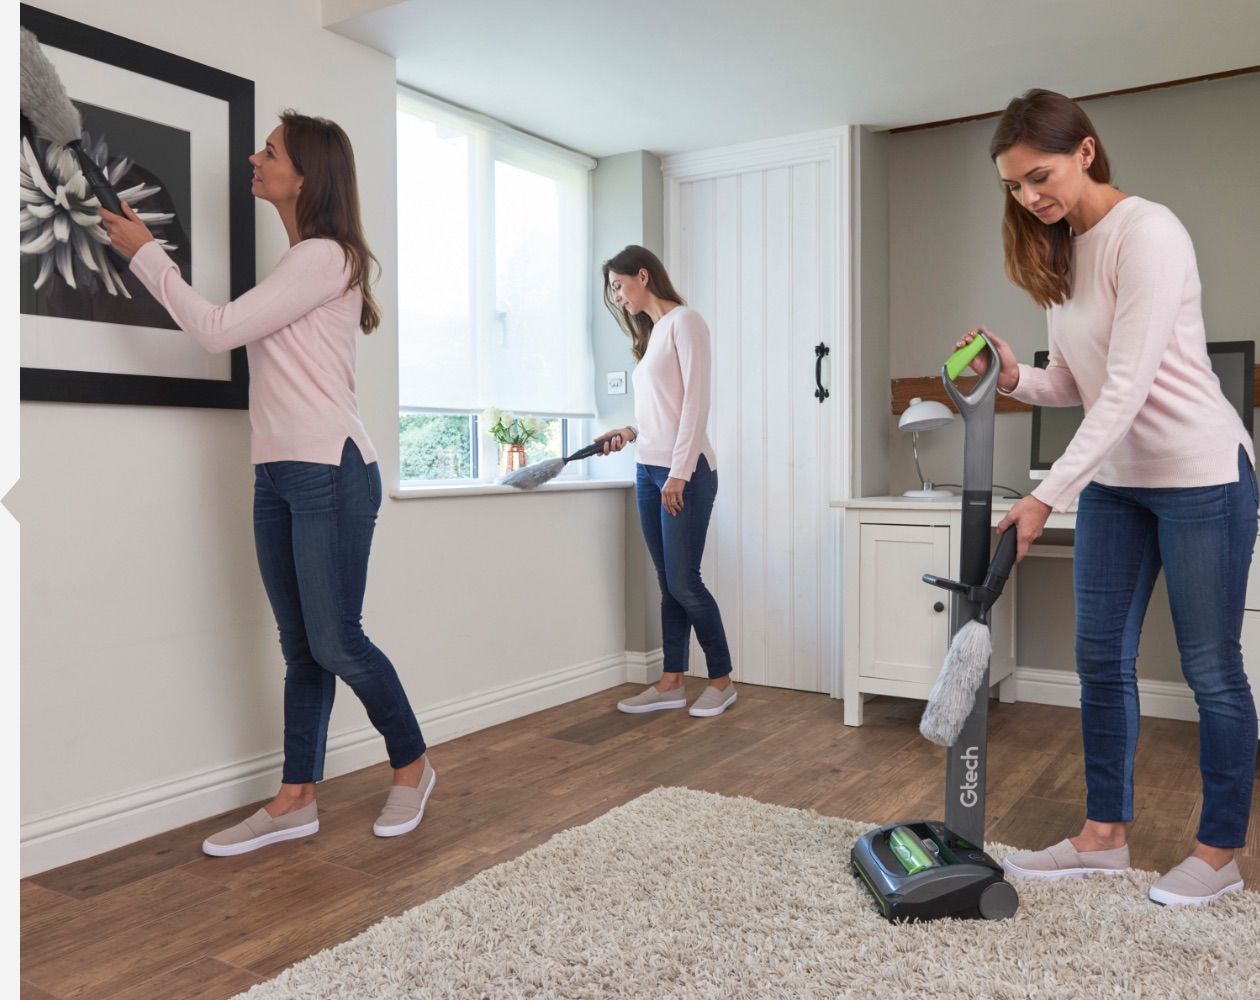 AirRam cordless vacuum cleaner attachment